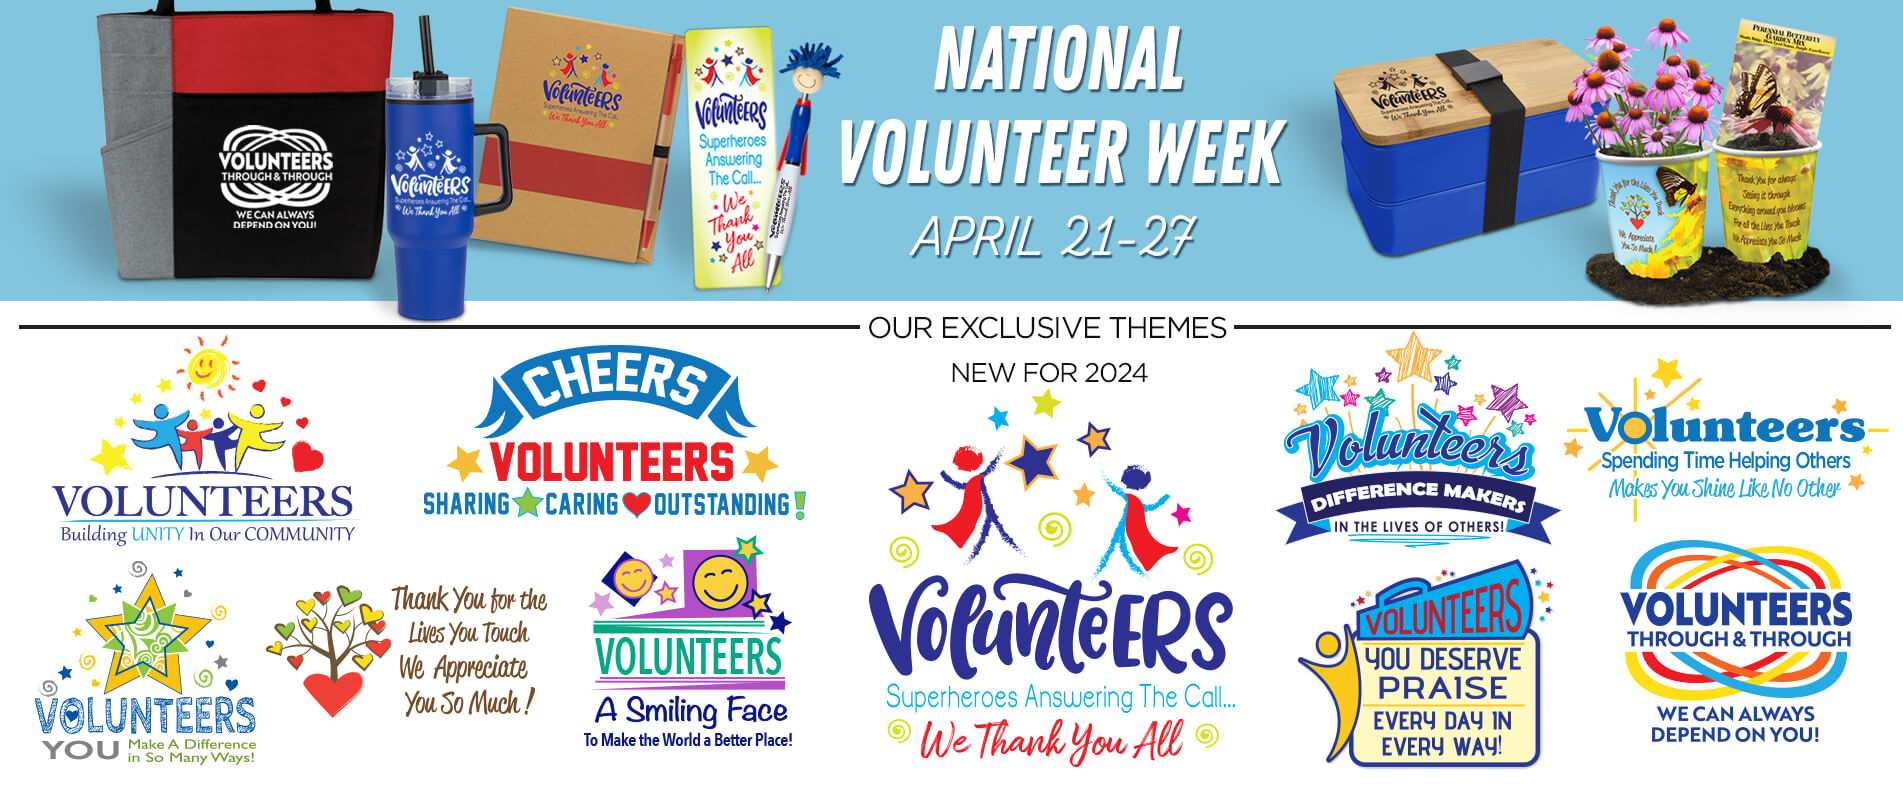 National Volunteer Week Appreciation Gifts Volunteer Gifts Volunteer